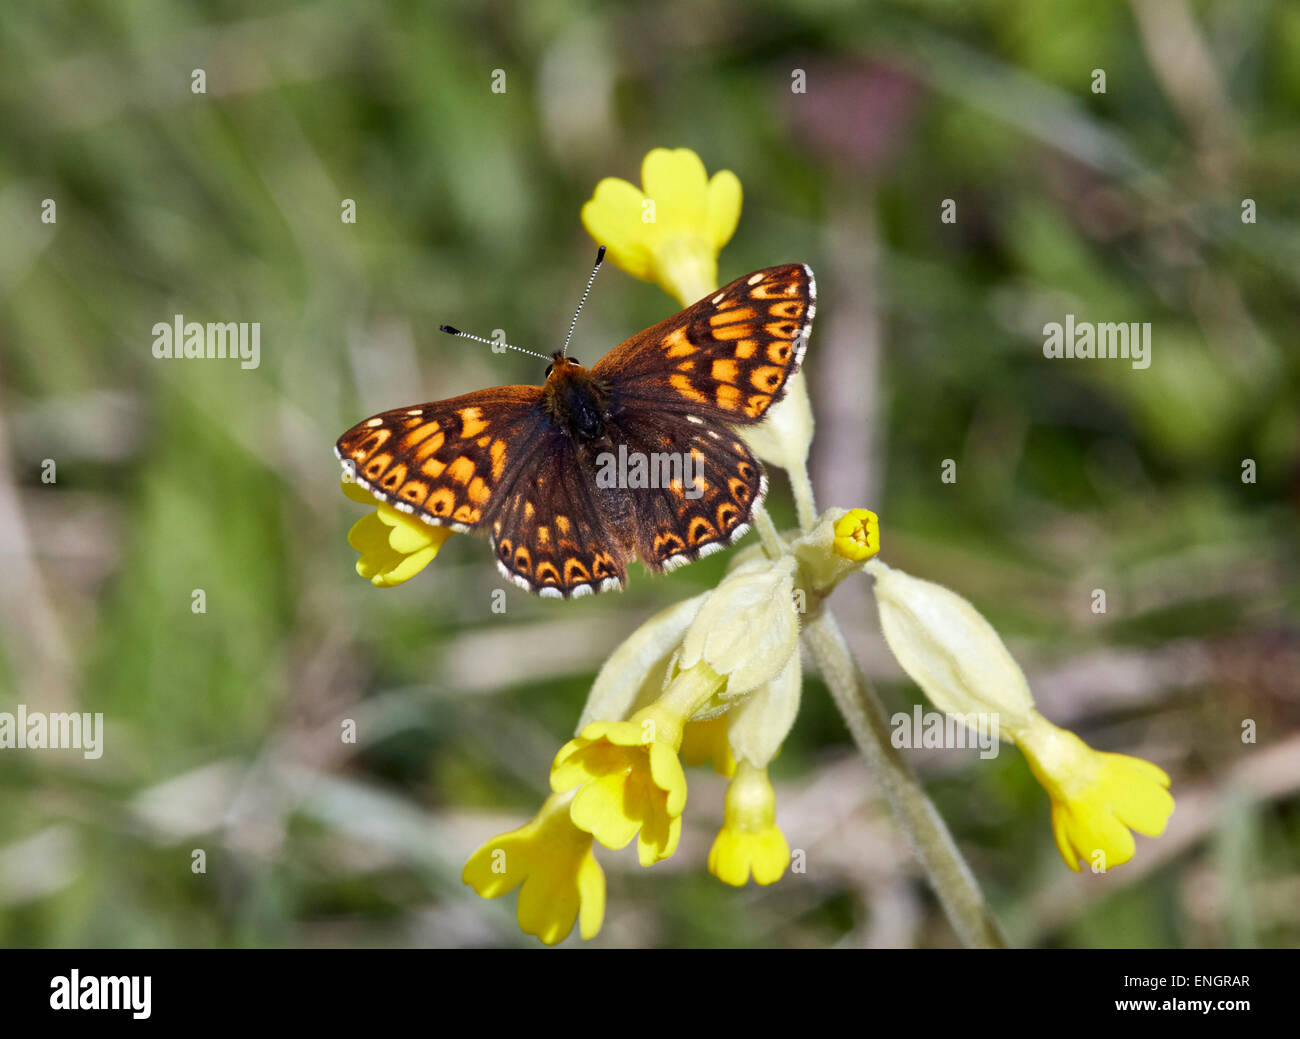 Herzog von Burgund Schmetterling auf Schlüsselblume. Noar Hill Nature Reserve, Selborne, Hampshire, England. Stockfoto